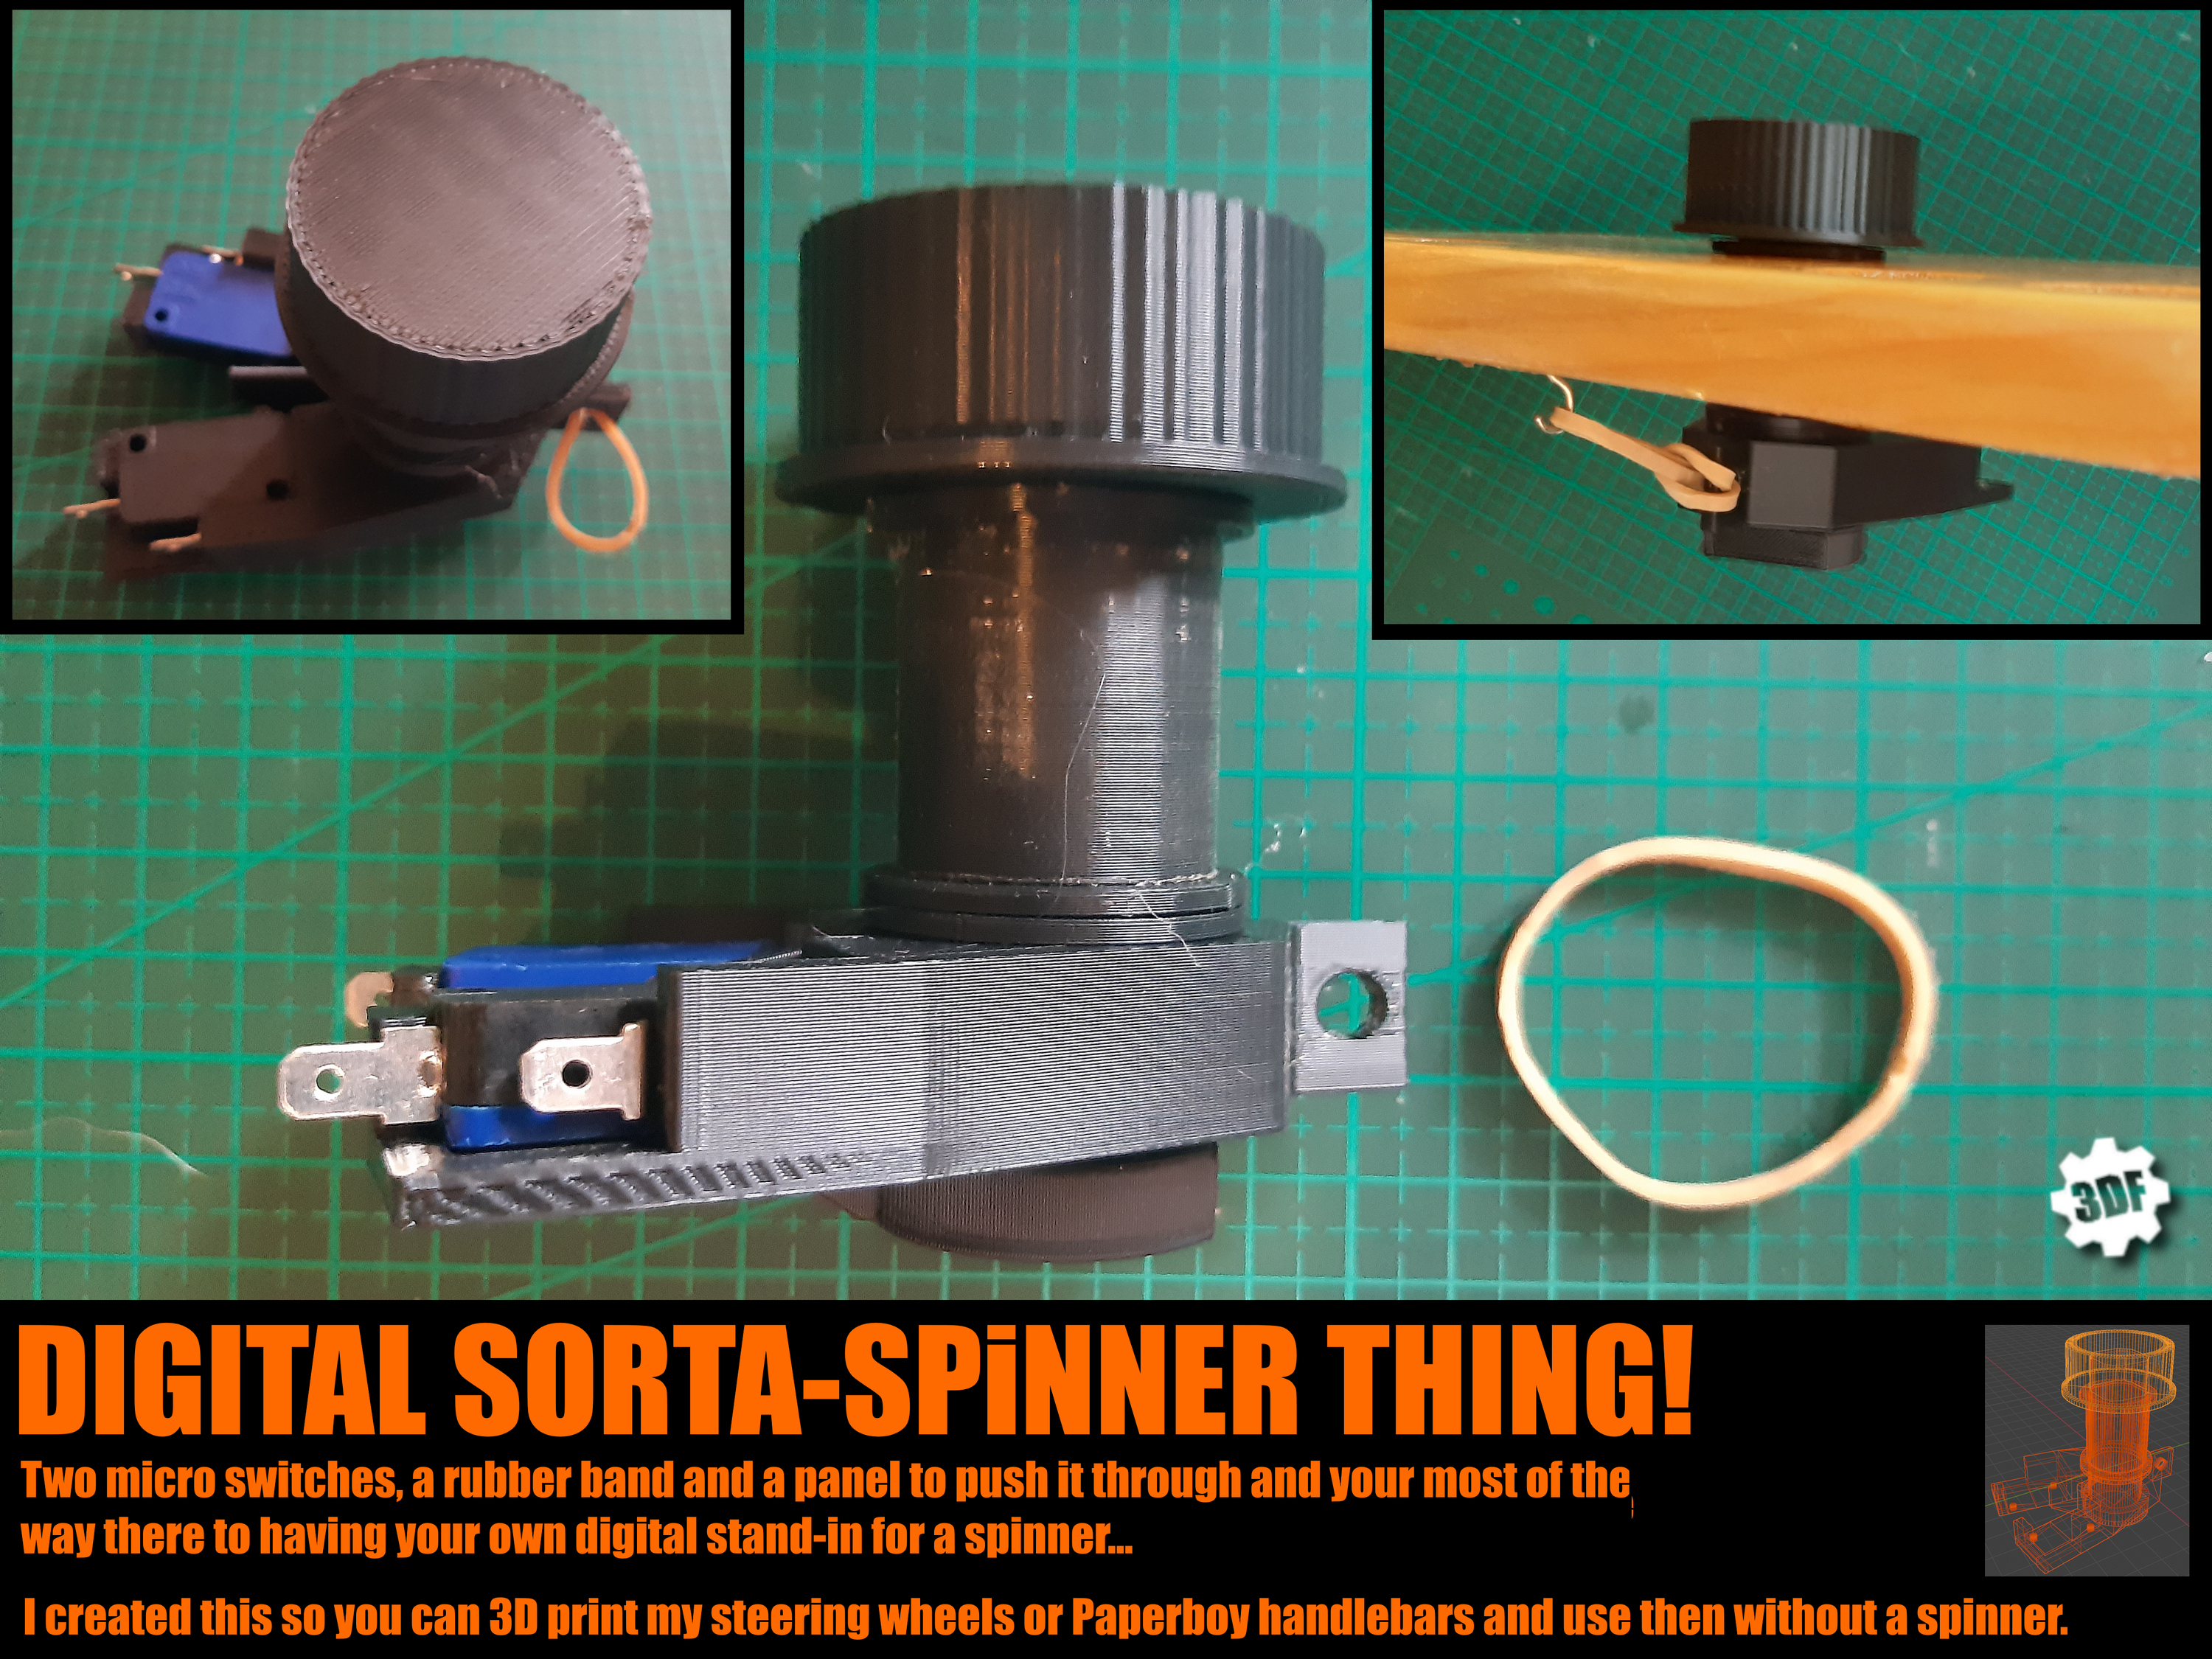 Digital Sorta - Arcade Spinner thing